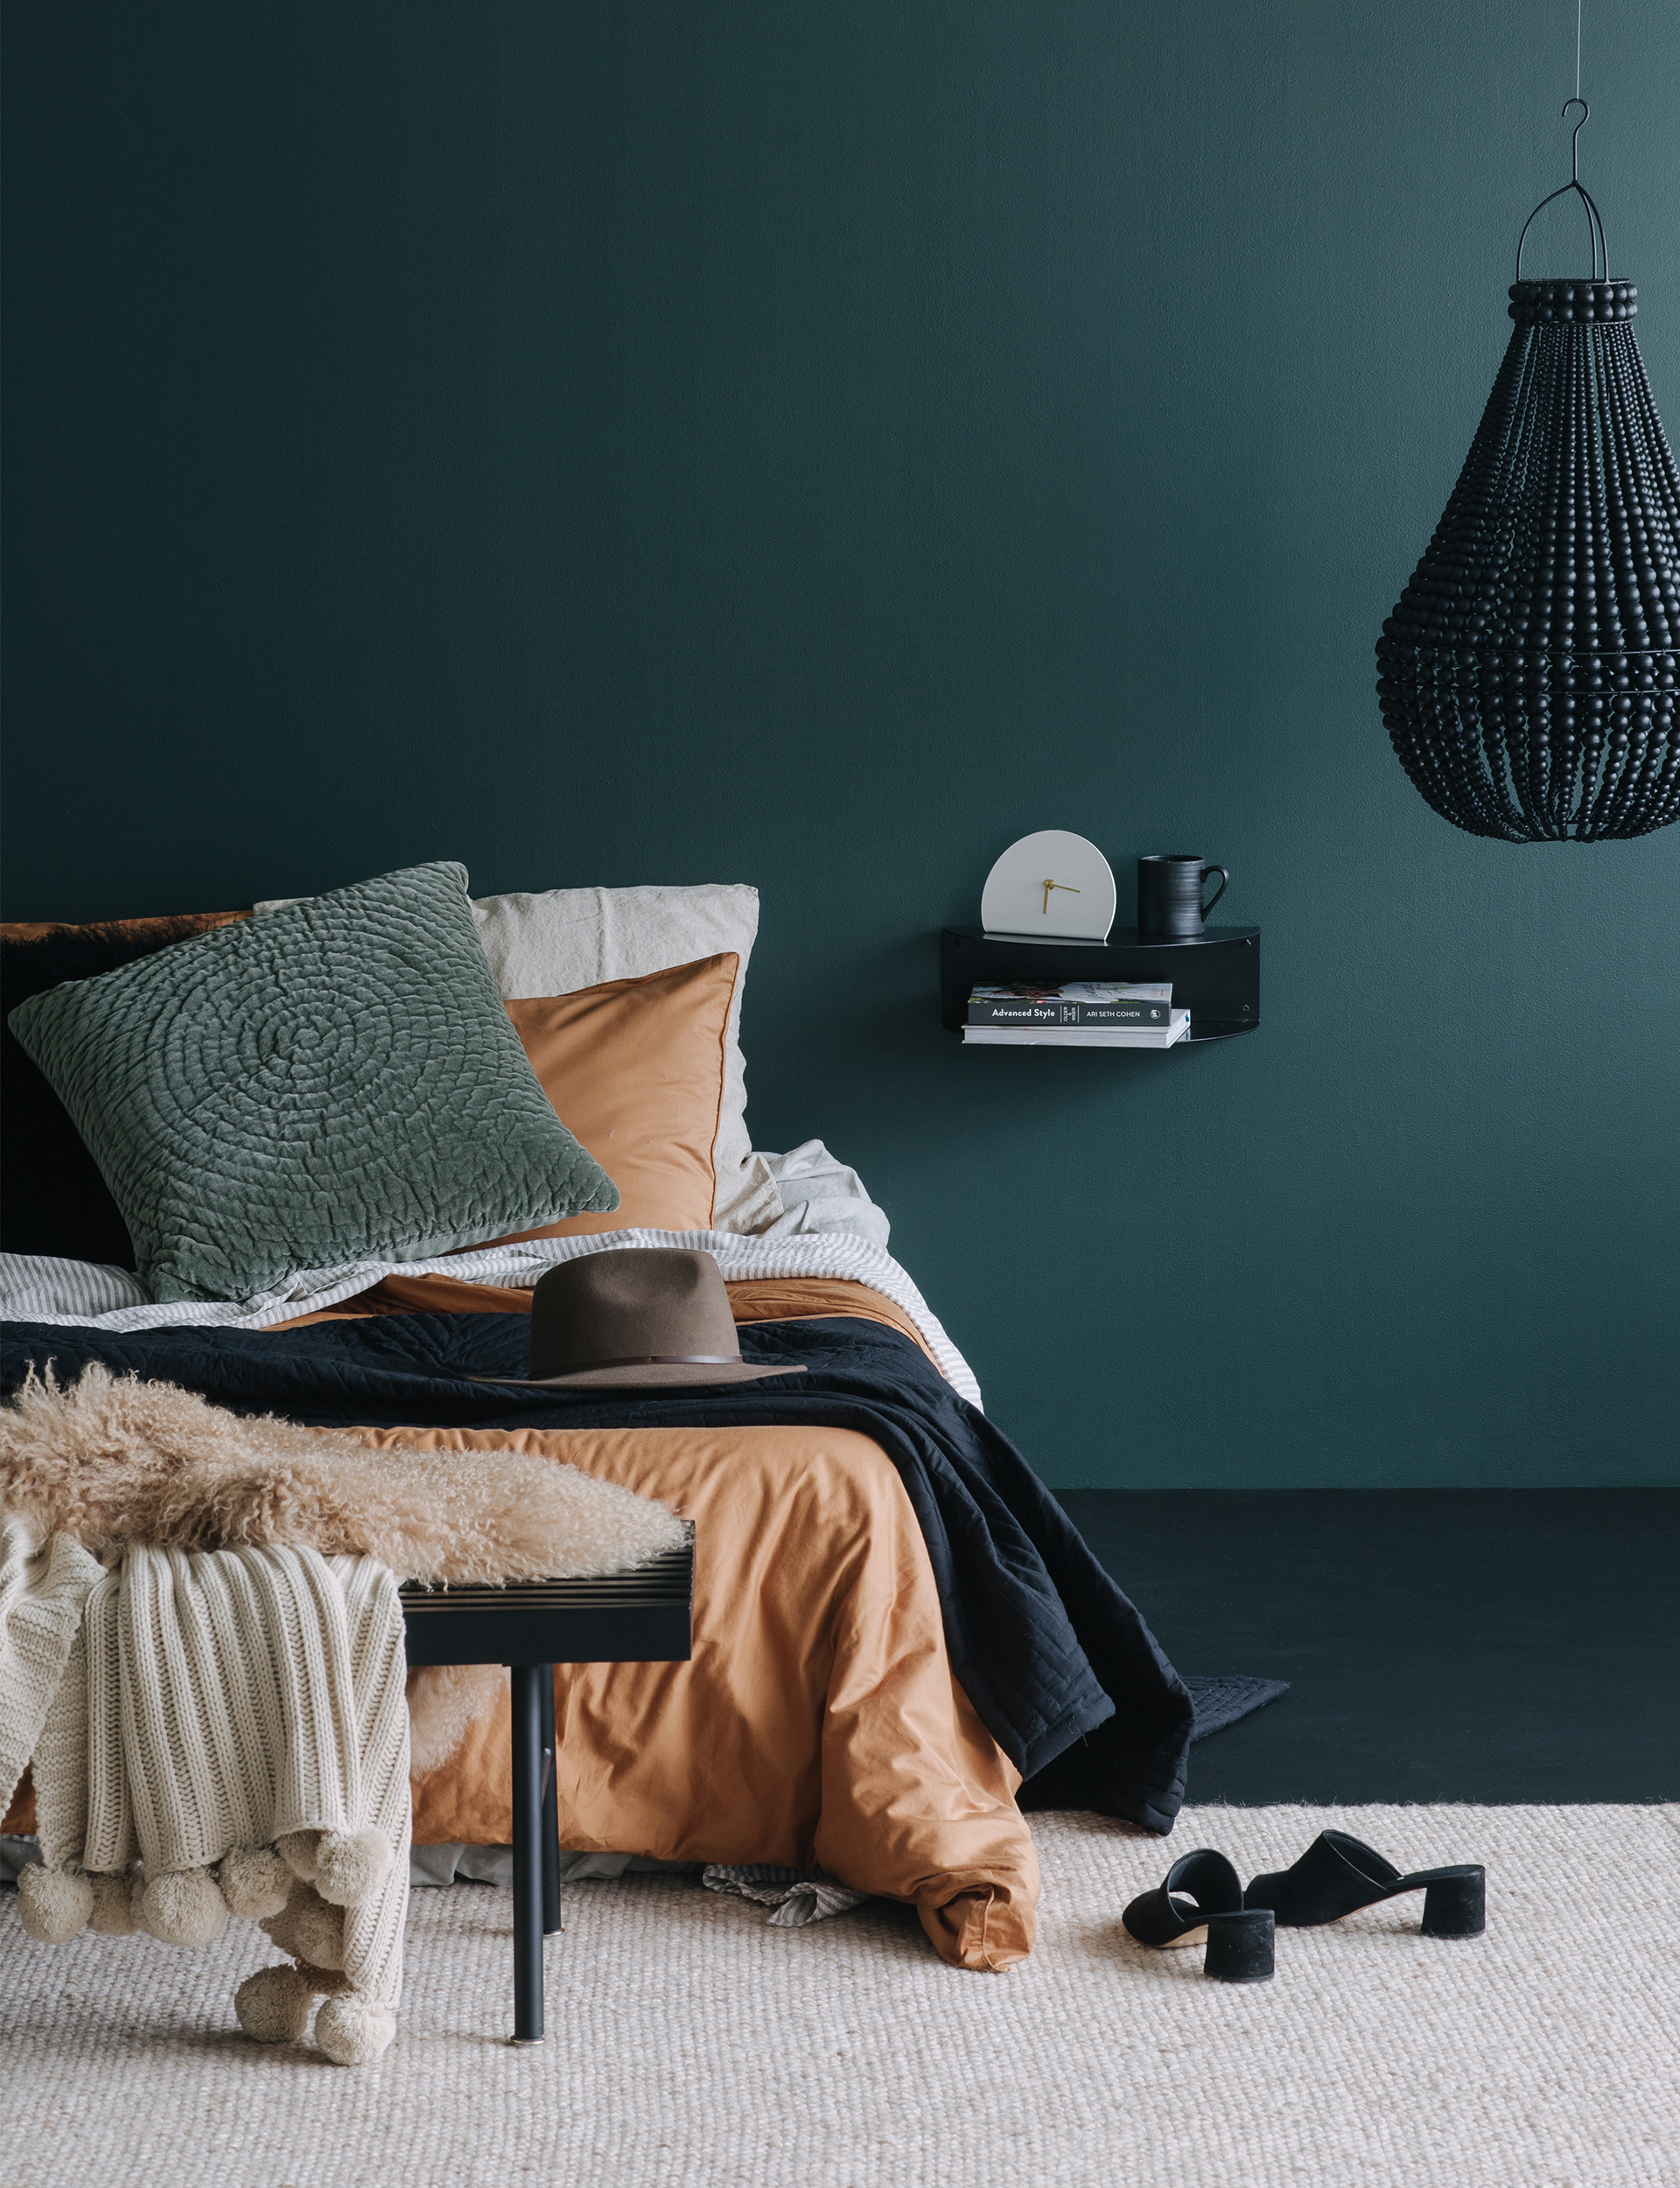 How to paint your floors, dark green bedroom